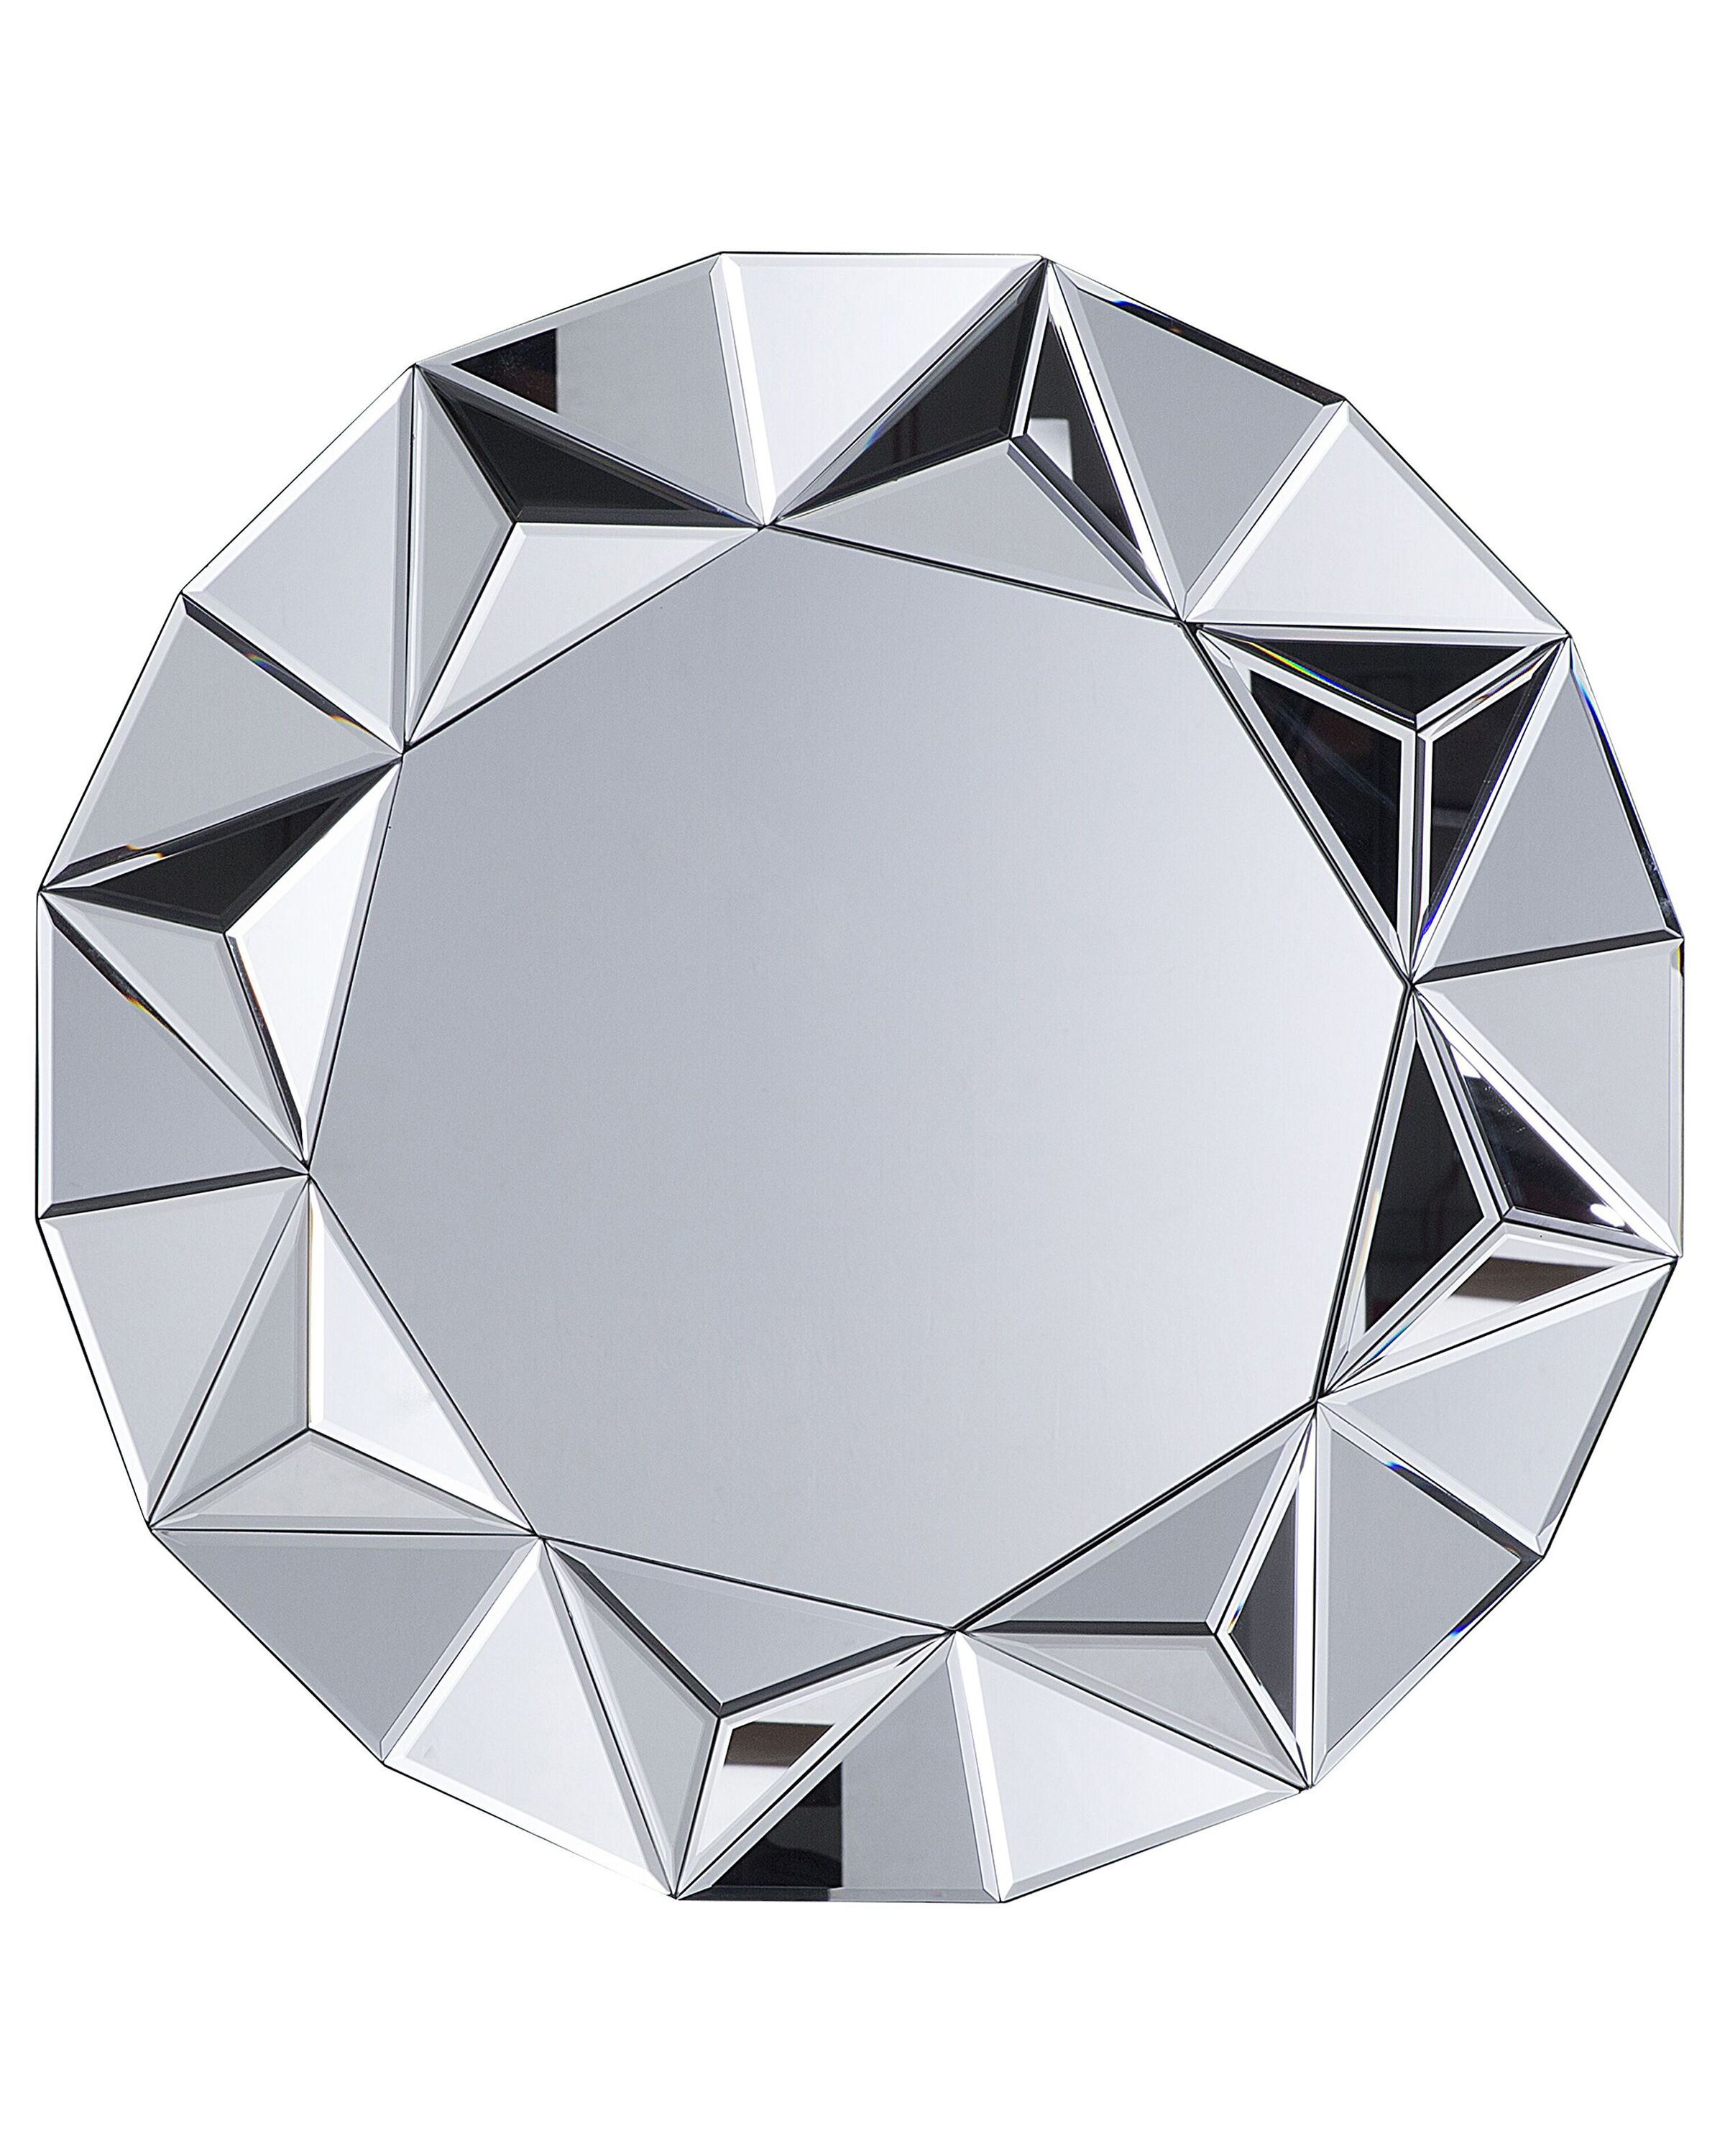 Specchio moderno 170x70 con cornice argento in vetro